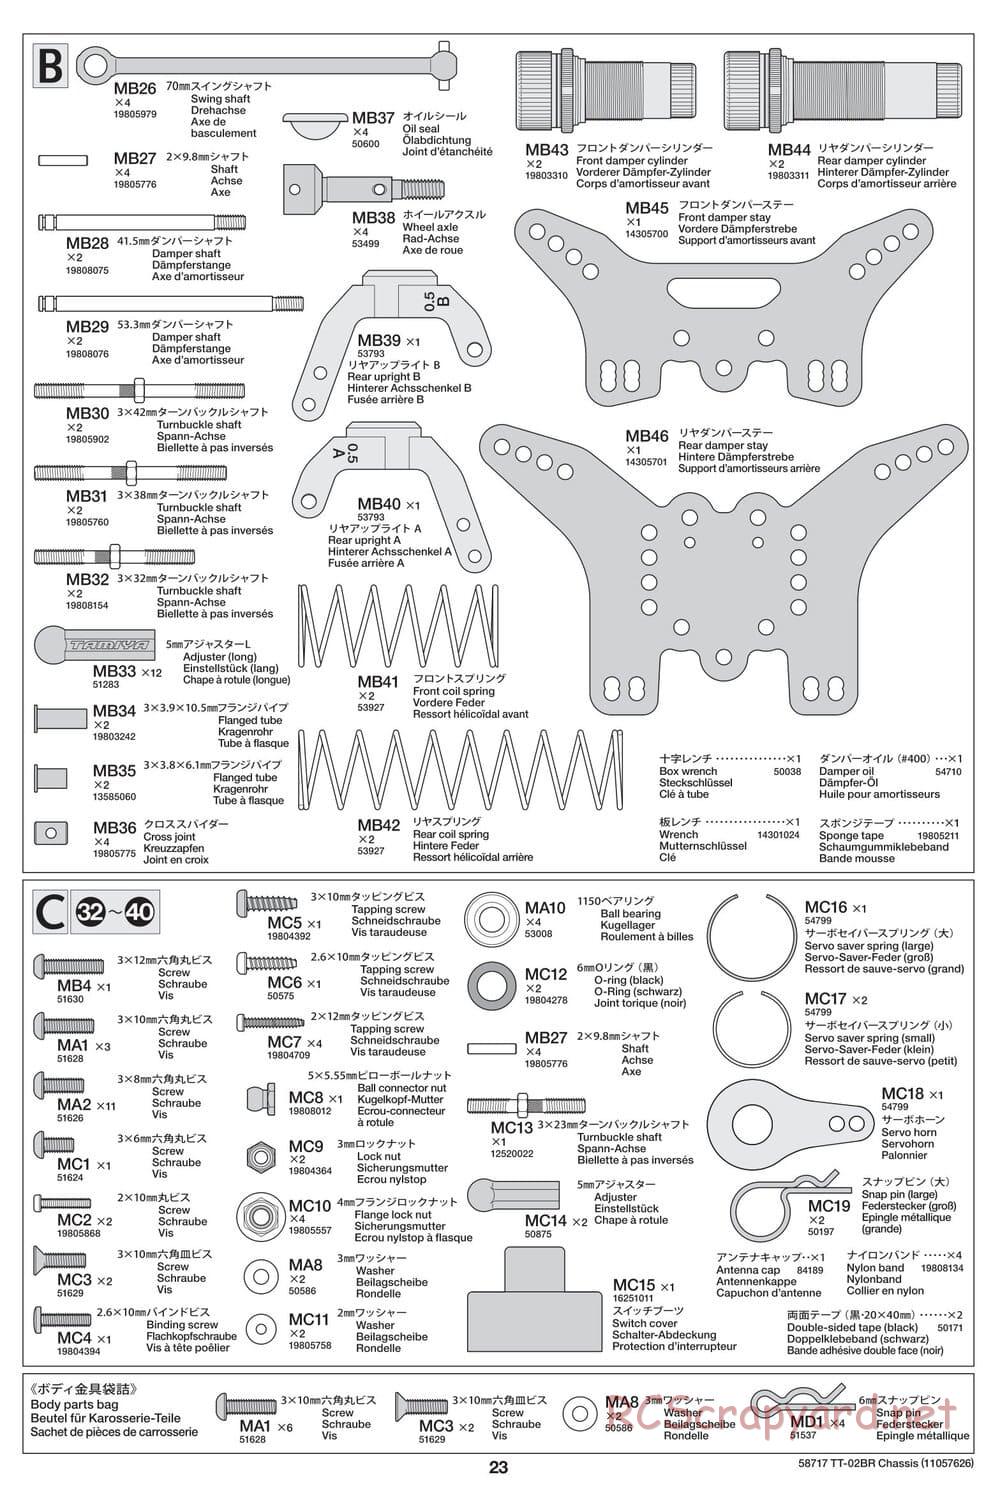 Tamiya - TT-02BR Chassis - Manual - Page 23